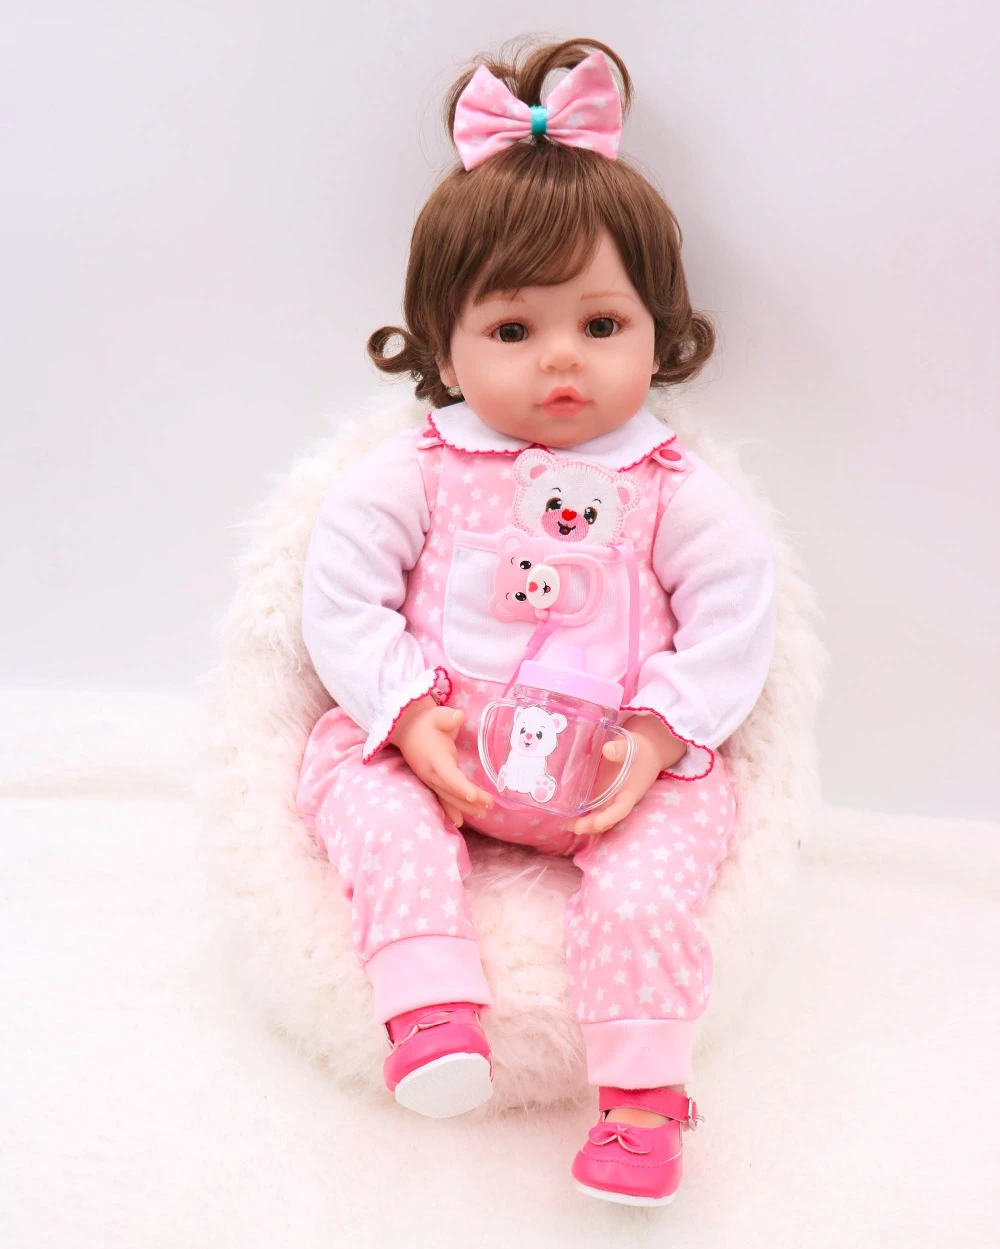 かわいい茶色の髪ロリ人形 3/4 シリコーンリボーン睡眠ベビードール子供遊び女の子のためのベビーアライブソフト Bebes リボーンおもちゃ|Dolls|  - AliExpress